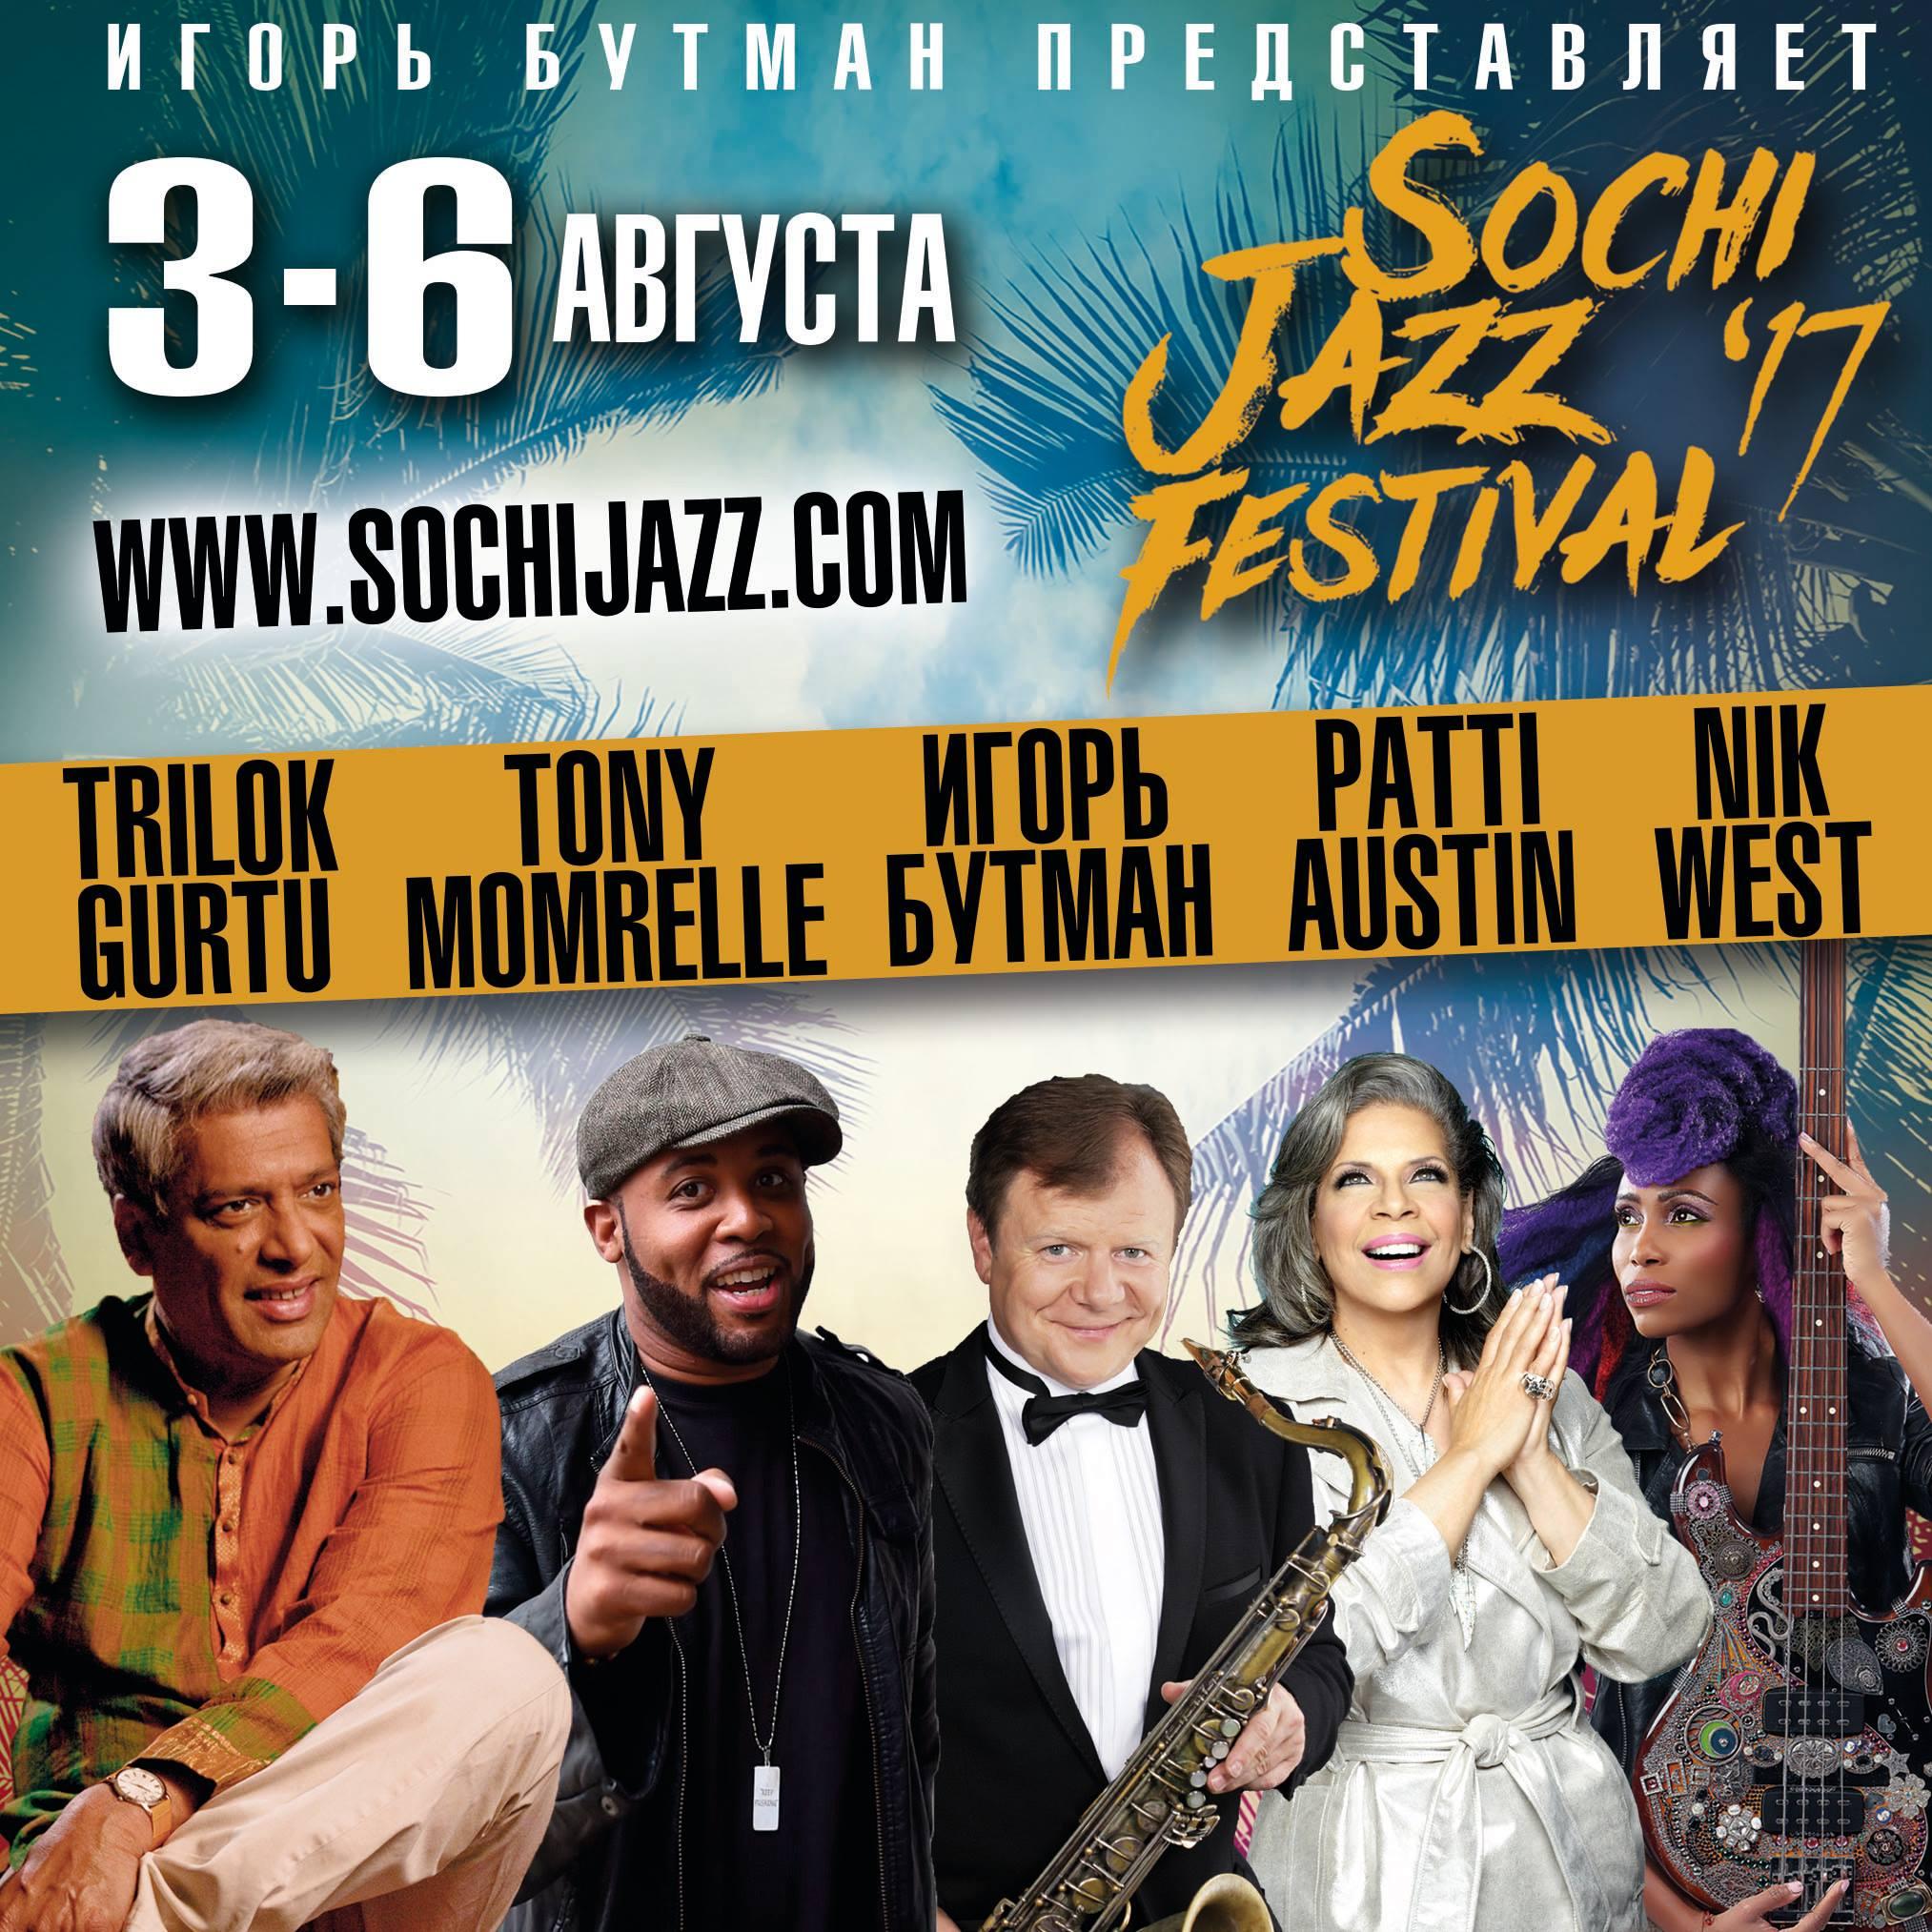 Список участников Sochi Jazz Festival пополнился новыми именами!